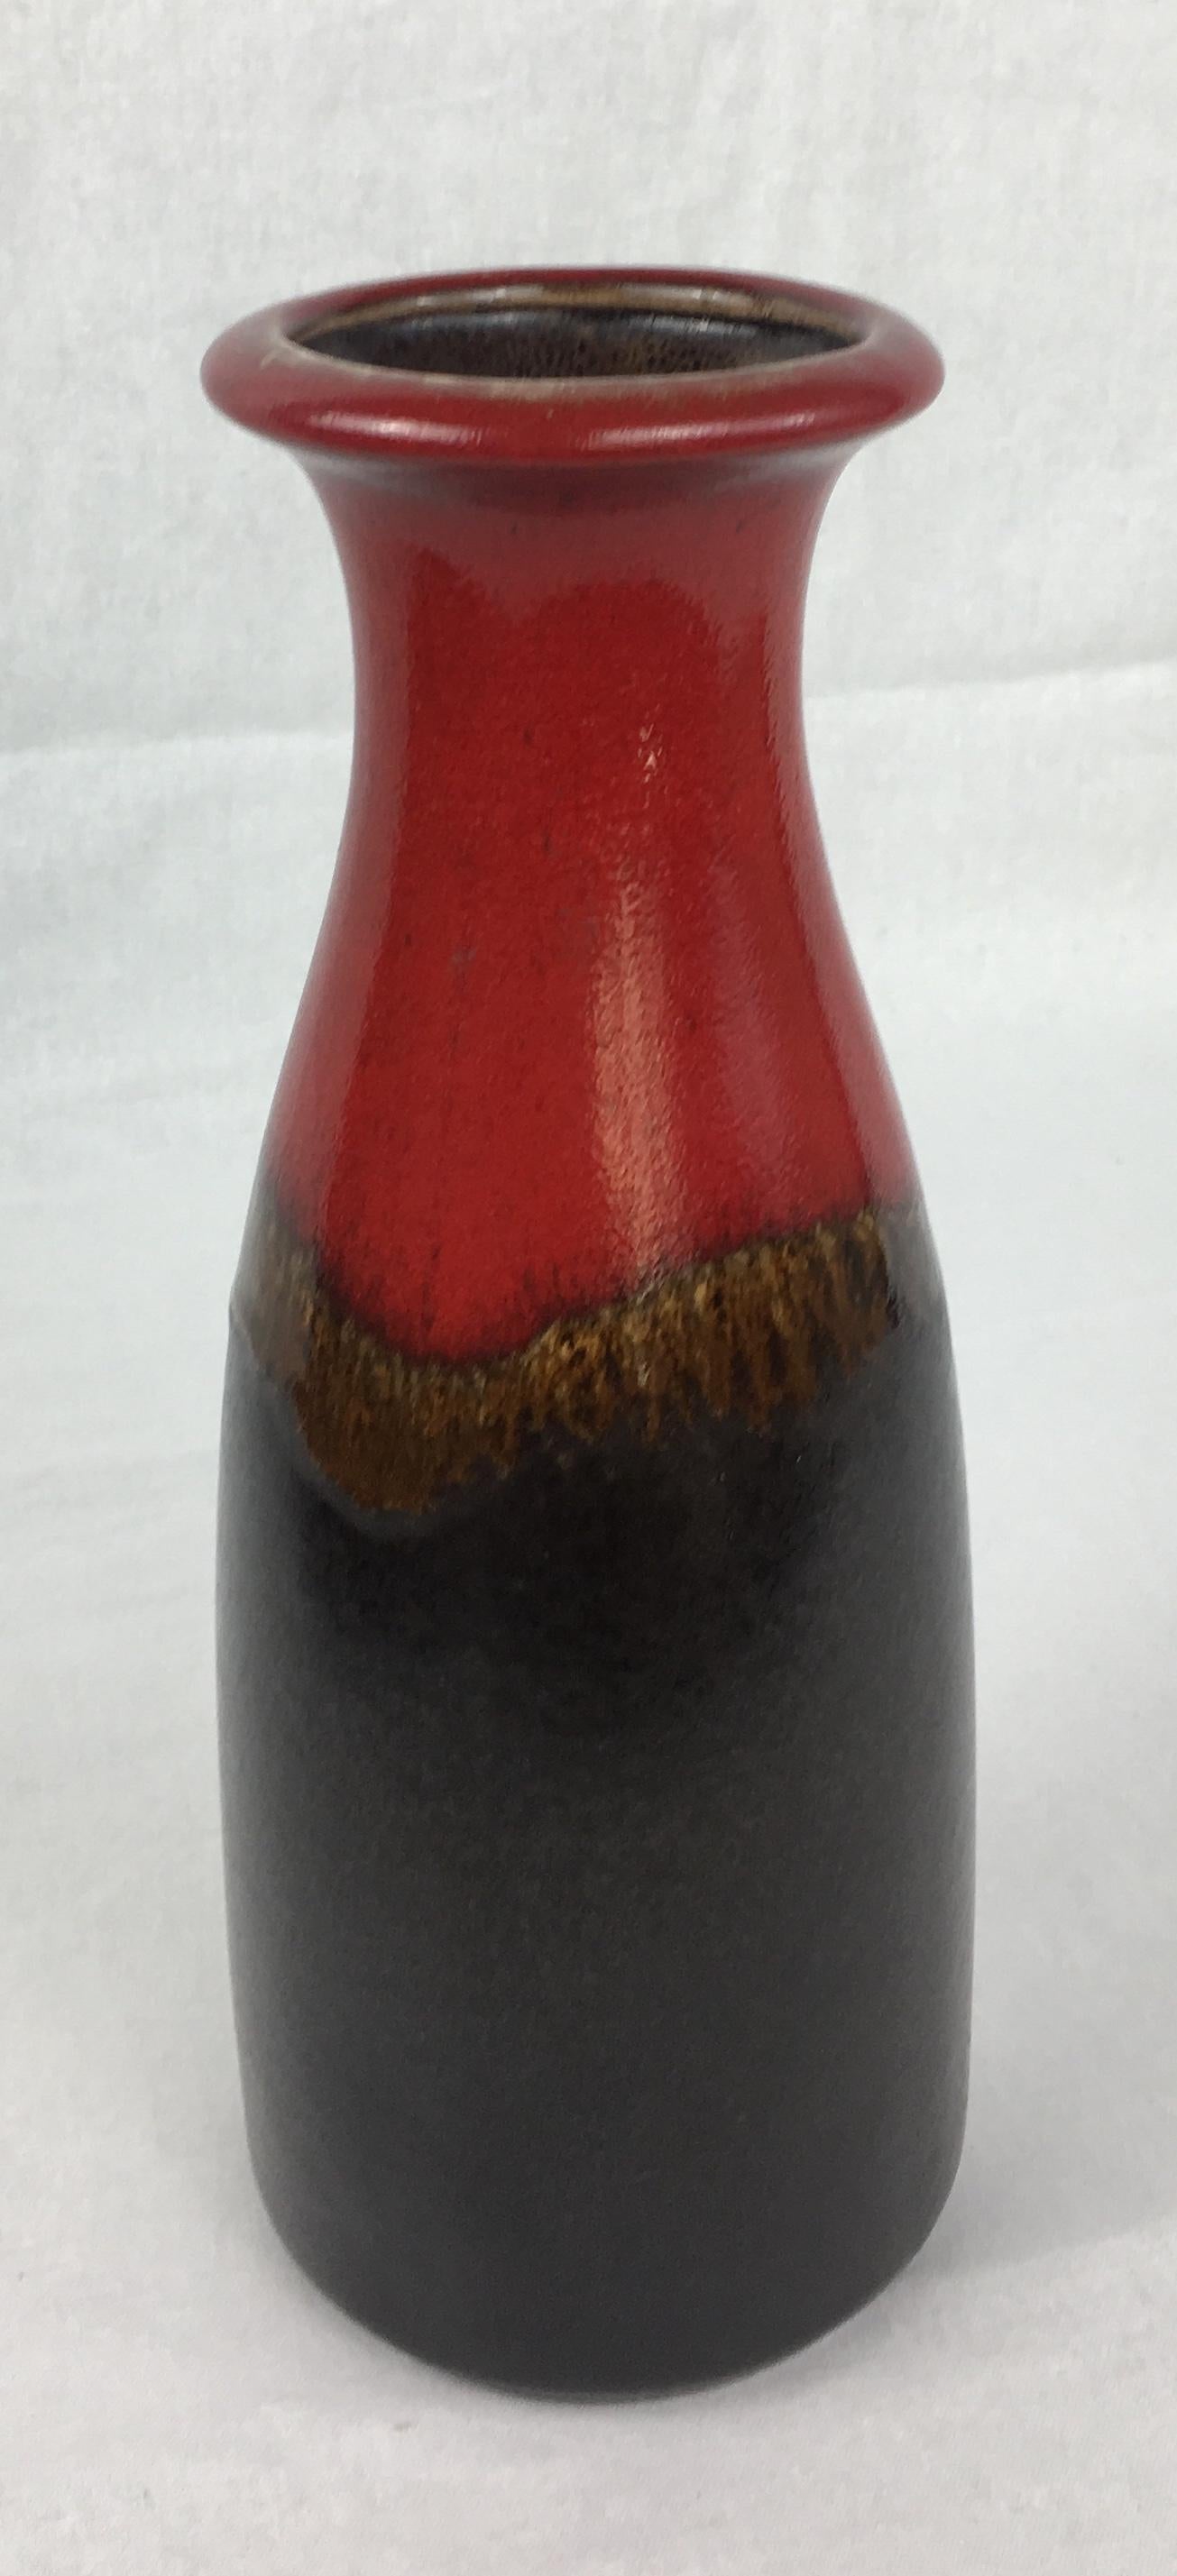 Schöne westdeutsche Vase, handgefertigt für Scheurich Keramik, mit markanten roten und schwarz-braunen Farbtönen. 

Unten erhöhte Buchstaben W. Deutschland und nummeriert 293-26.
 